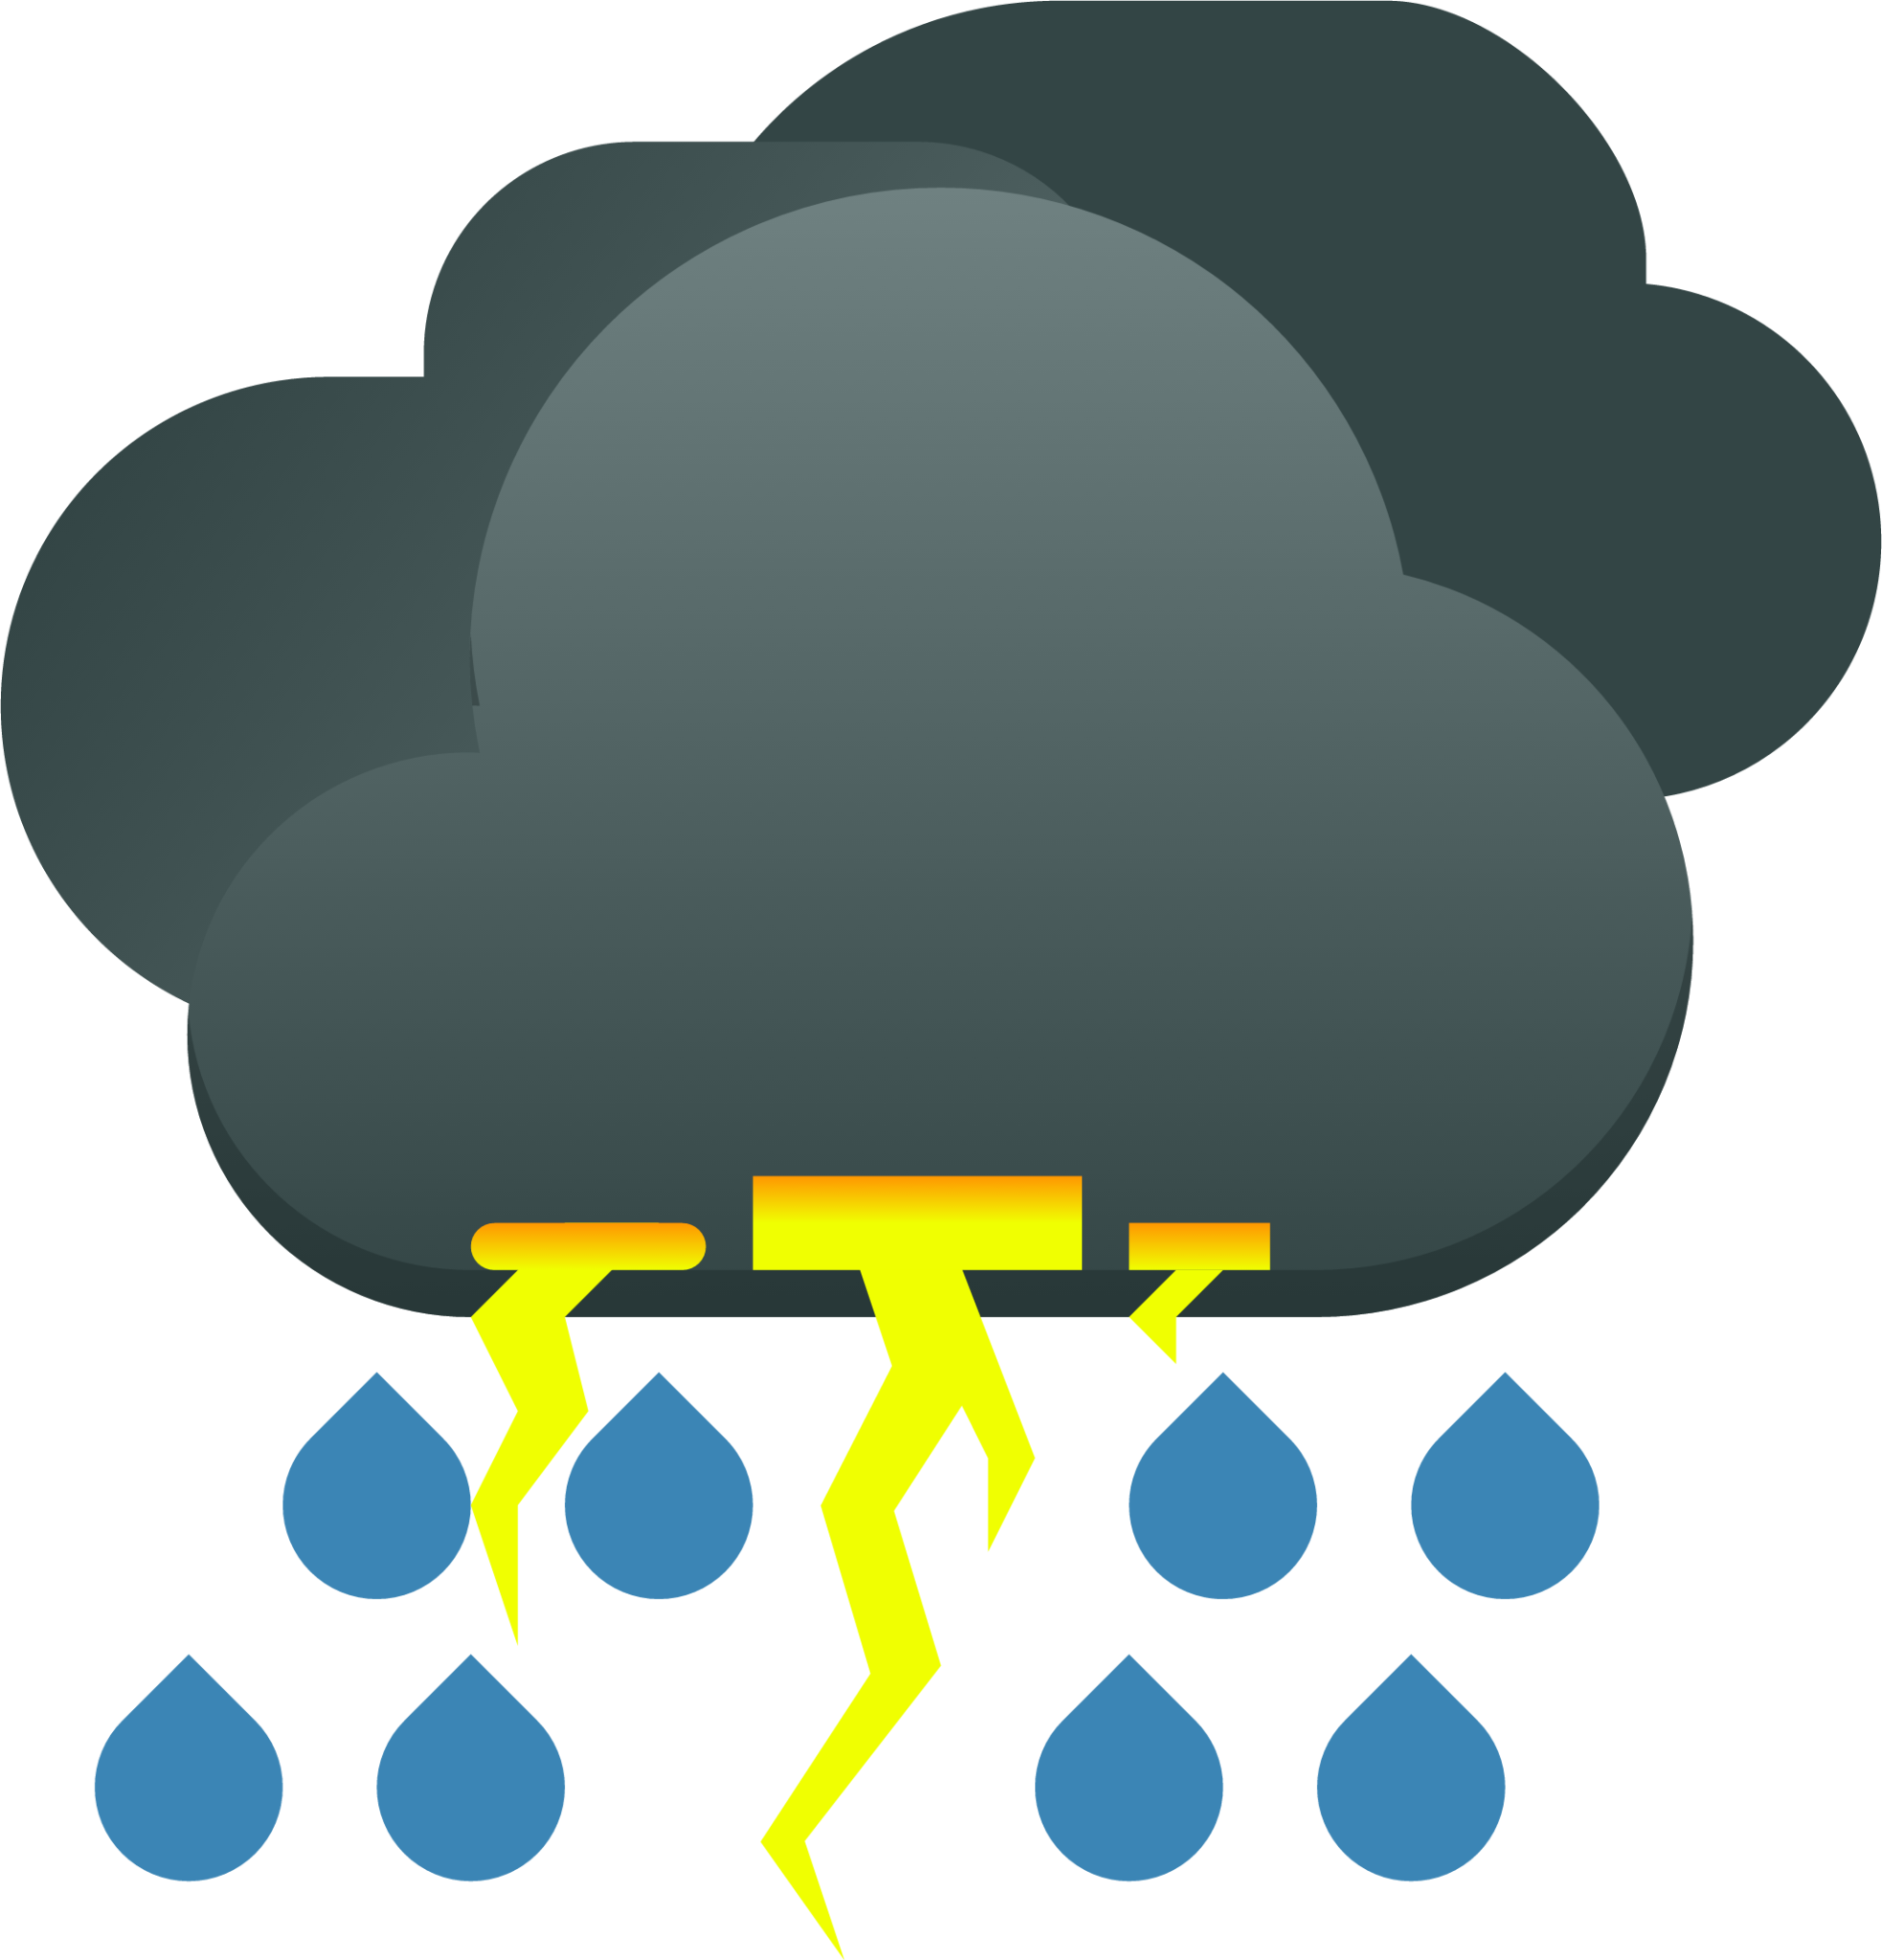 weather storm icon